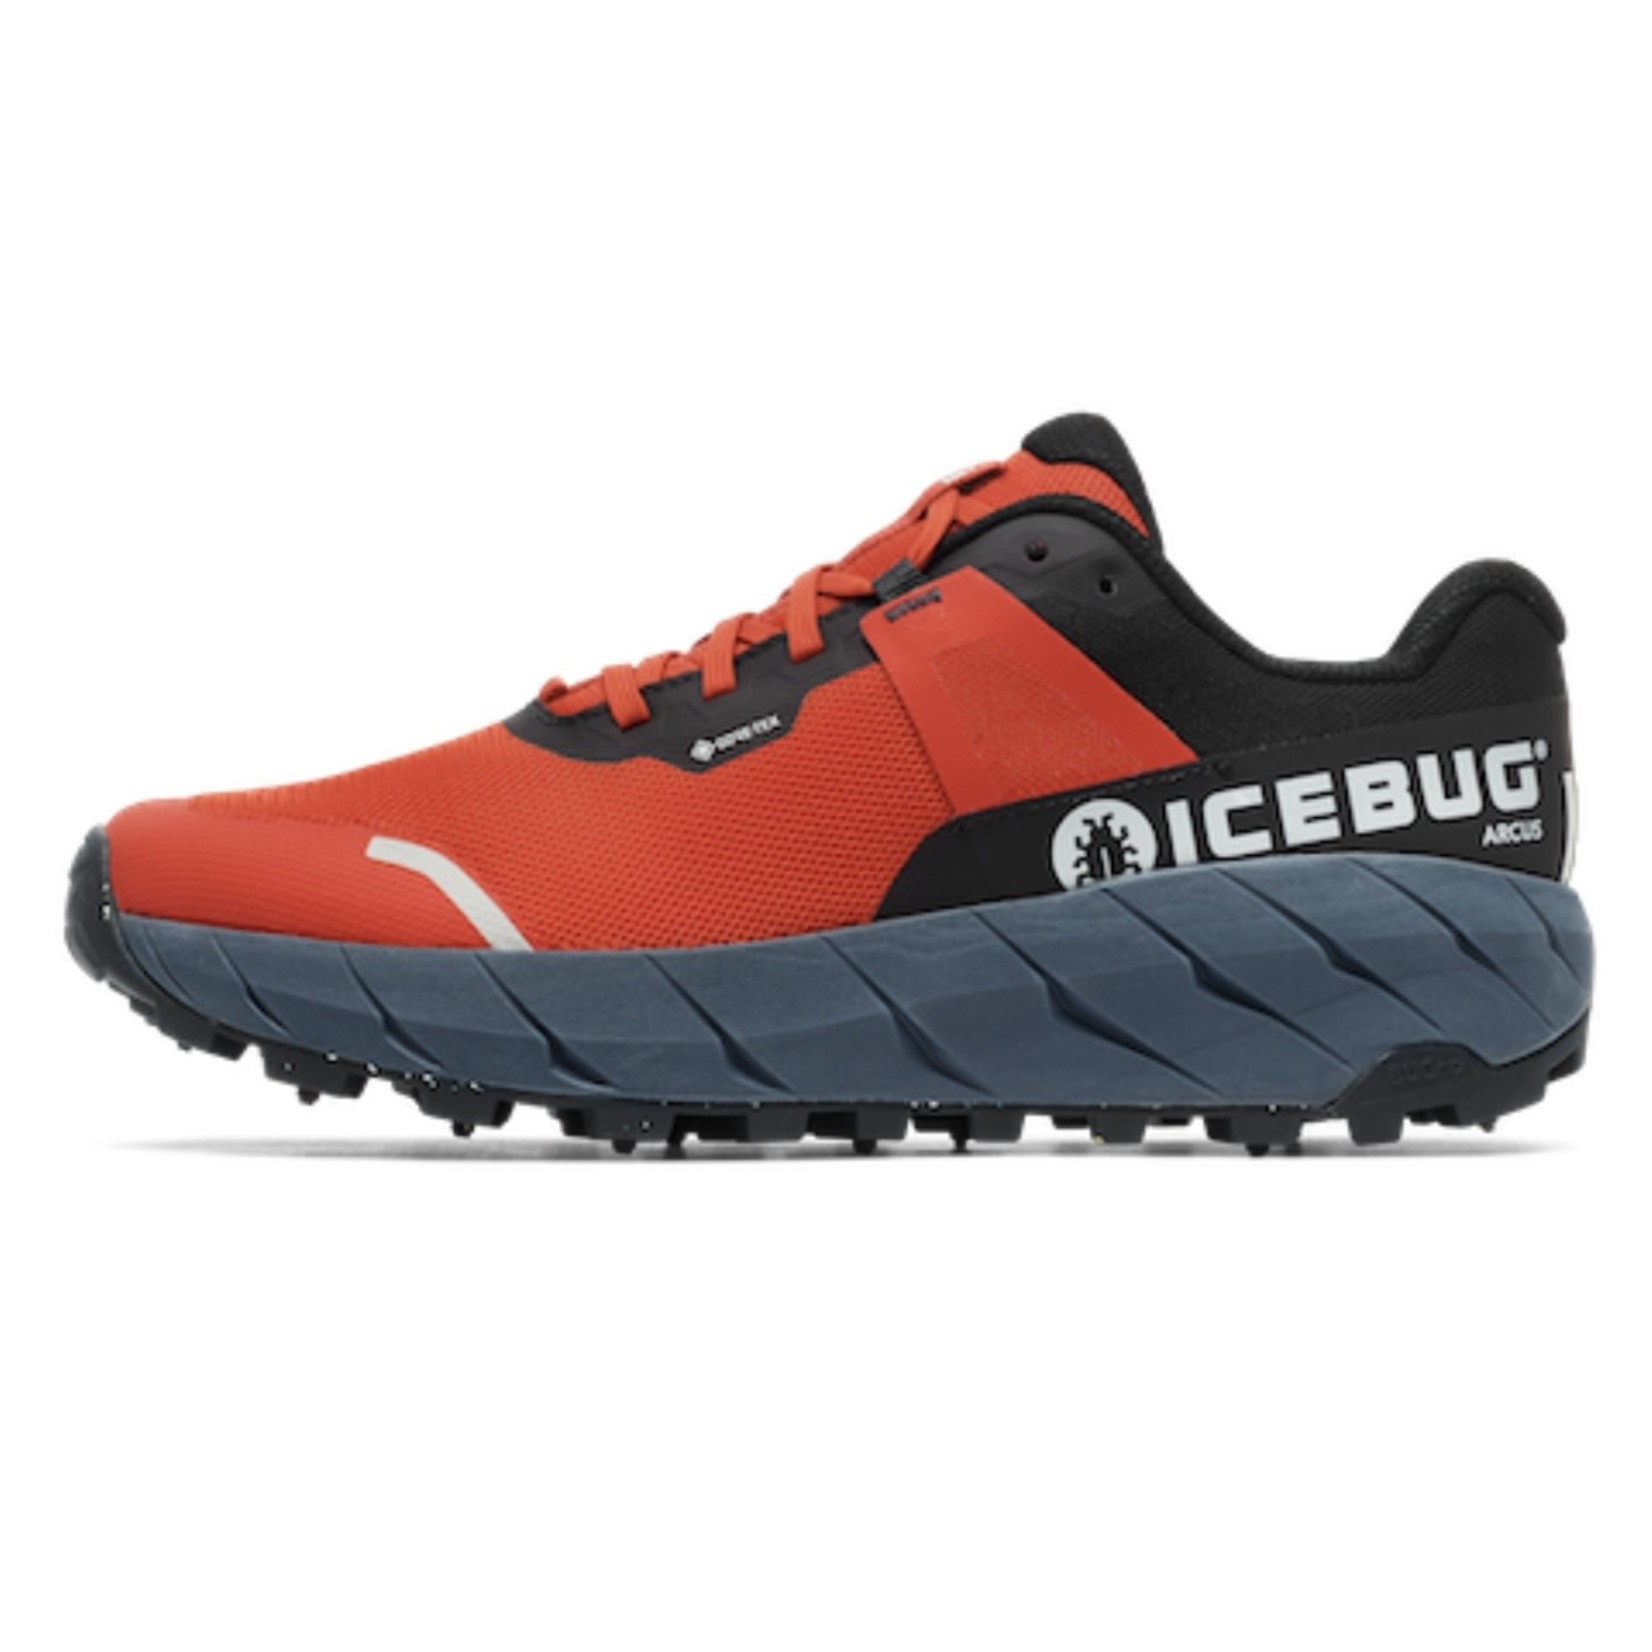 IceBug Arcus BUGrip GTX, Men's - Trekkers Outdoor Ltd.